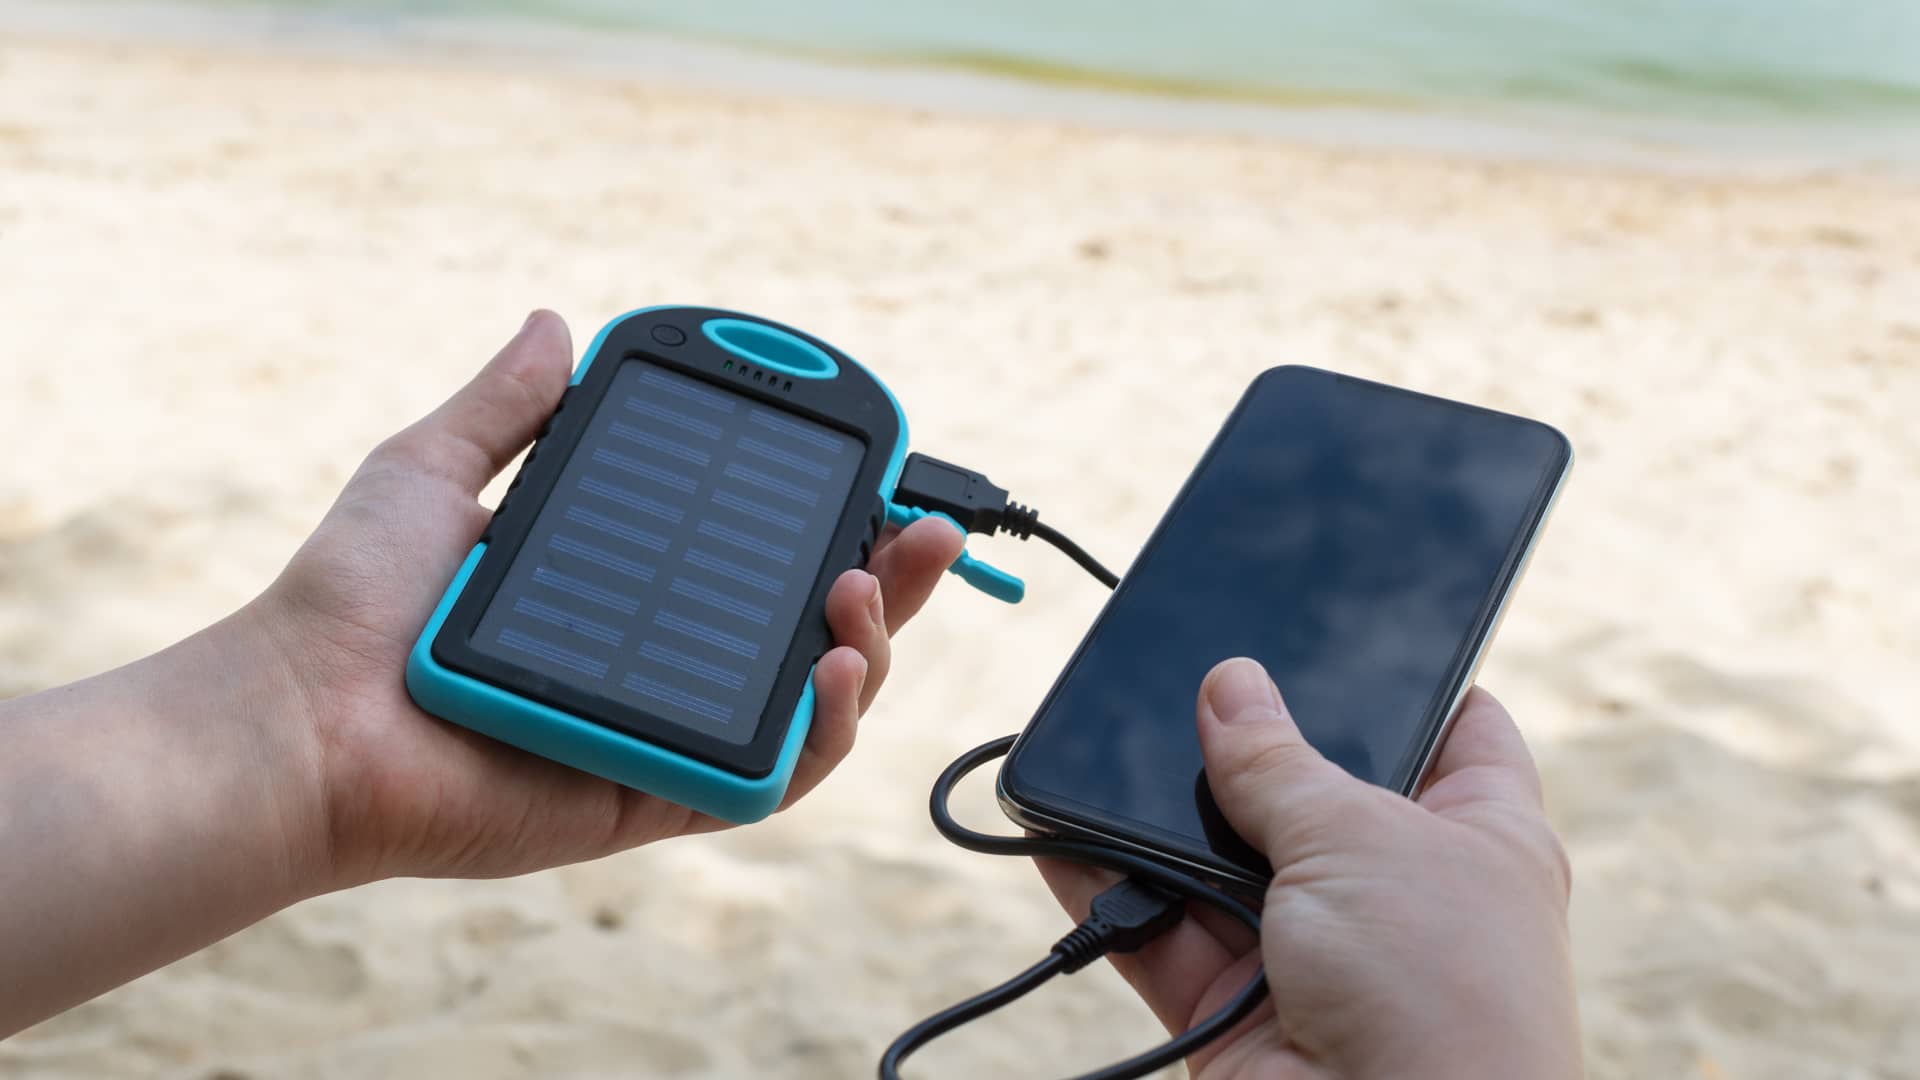 Persona espera mientras su móvil comienza a cargarse gracias a un cargador solar de USB, similar a los que se pueden hacer de forma casera